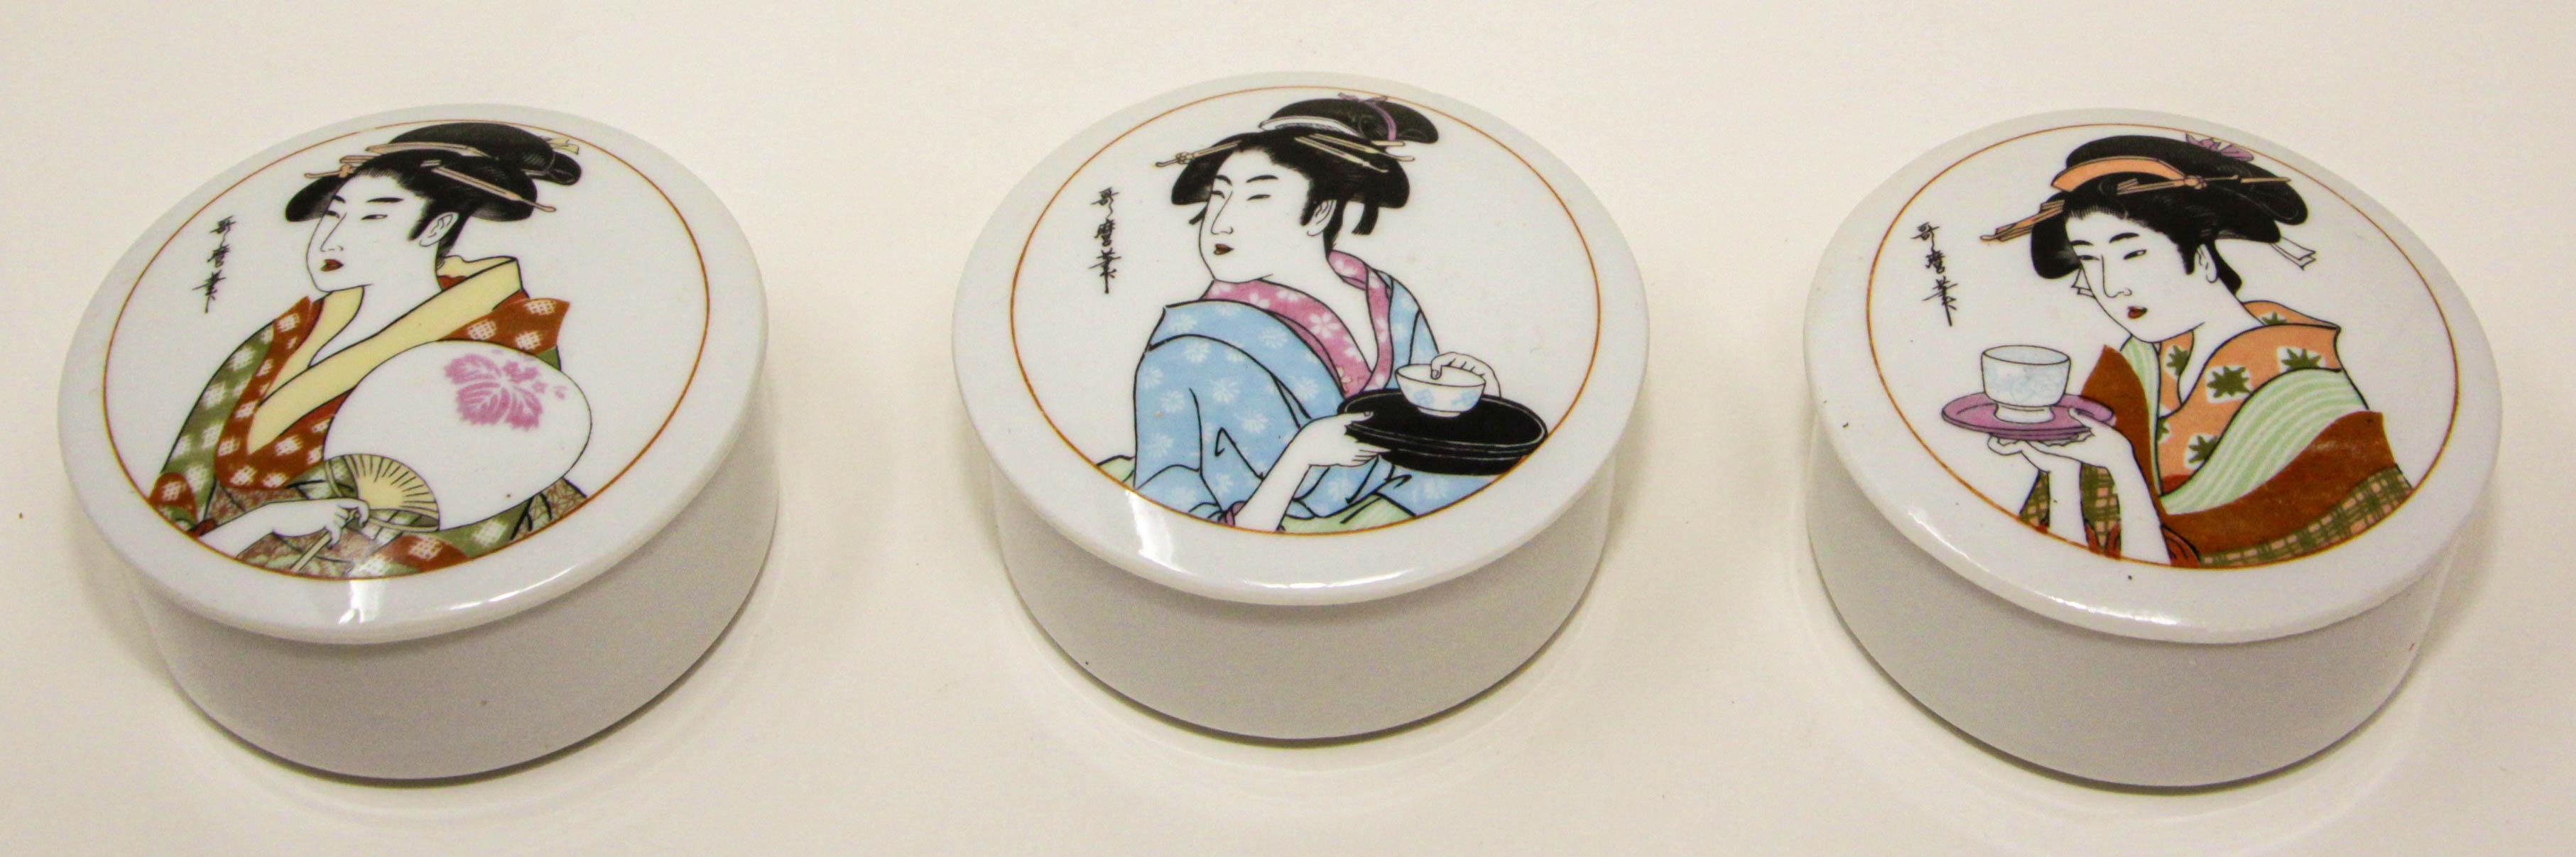 Japanische Vintage-Porzellan-Dosen mit Deckel, 3er-Set.
Asiatische japanische Vintage-Porzellan-Dosen mit Geishas in traditionellen Kimonos.
Japanische Porzellan-Deko-Box, jede Box mit einem anderen Design, perfekt für die Aufbewahrung kleiner